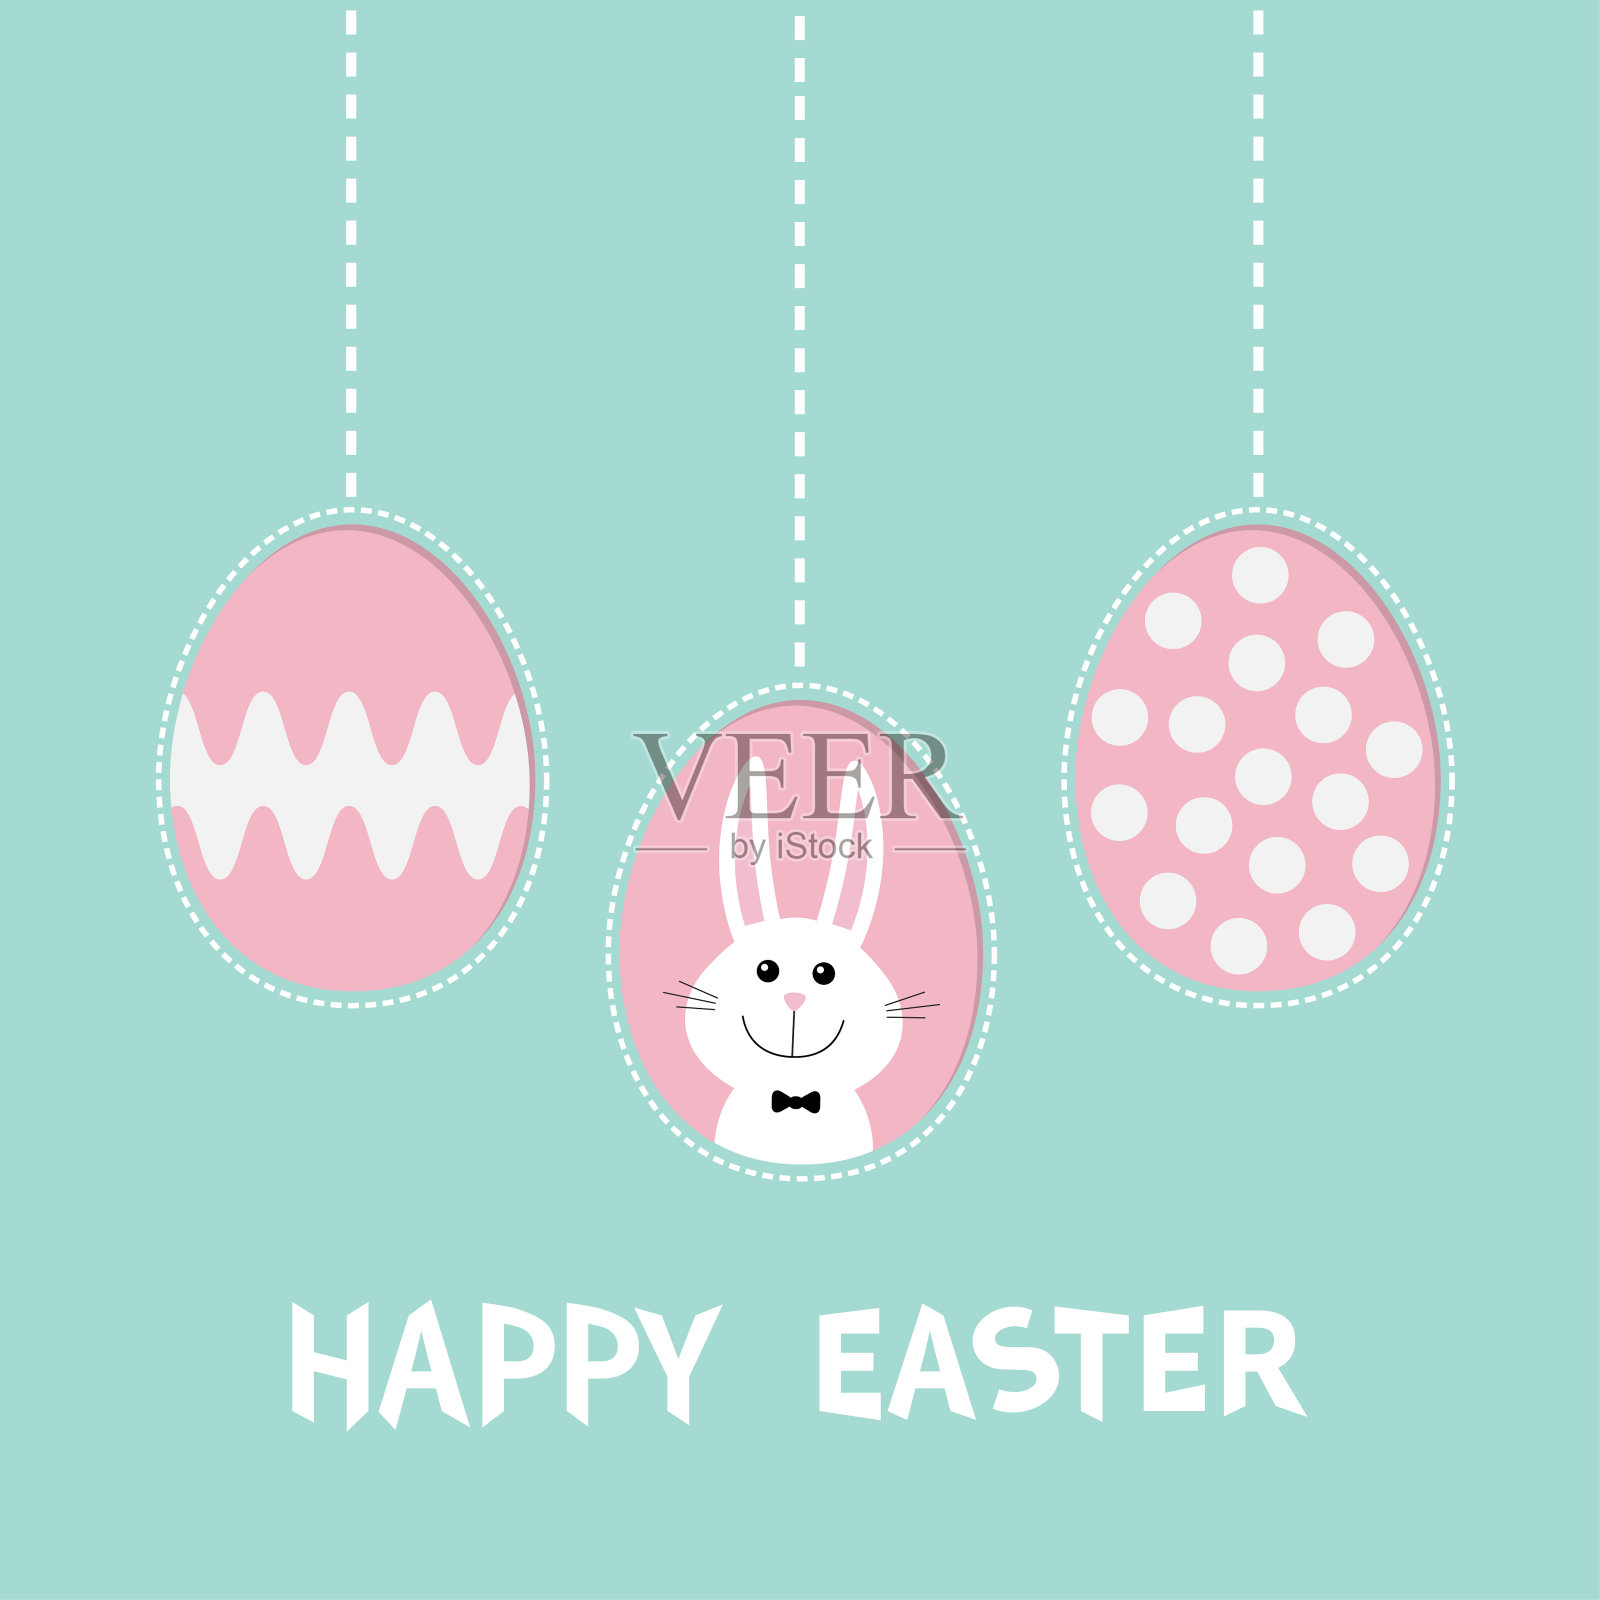 三画蛋壳。兔子戴着蝴蝶结。复活节快乐文本。挂画蛋套。虚线。贺卡。平面设计风格。可爱的装饰元素。设计模板素材